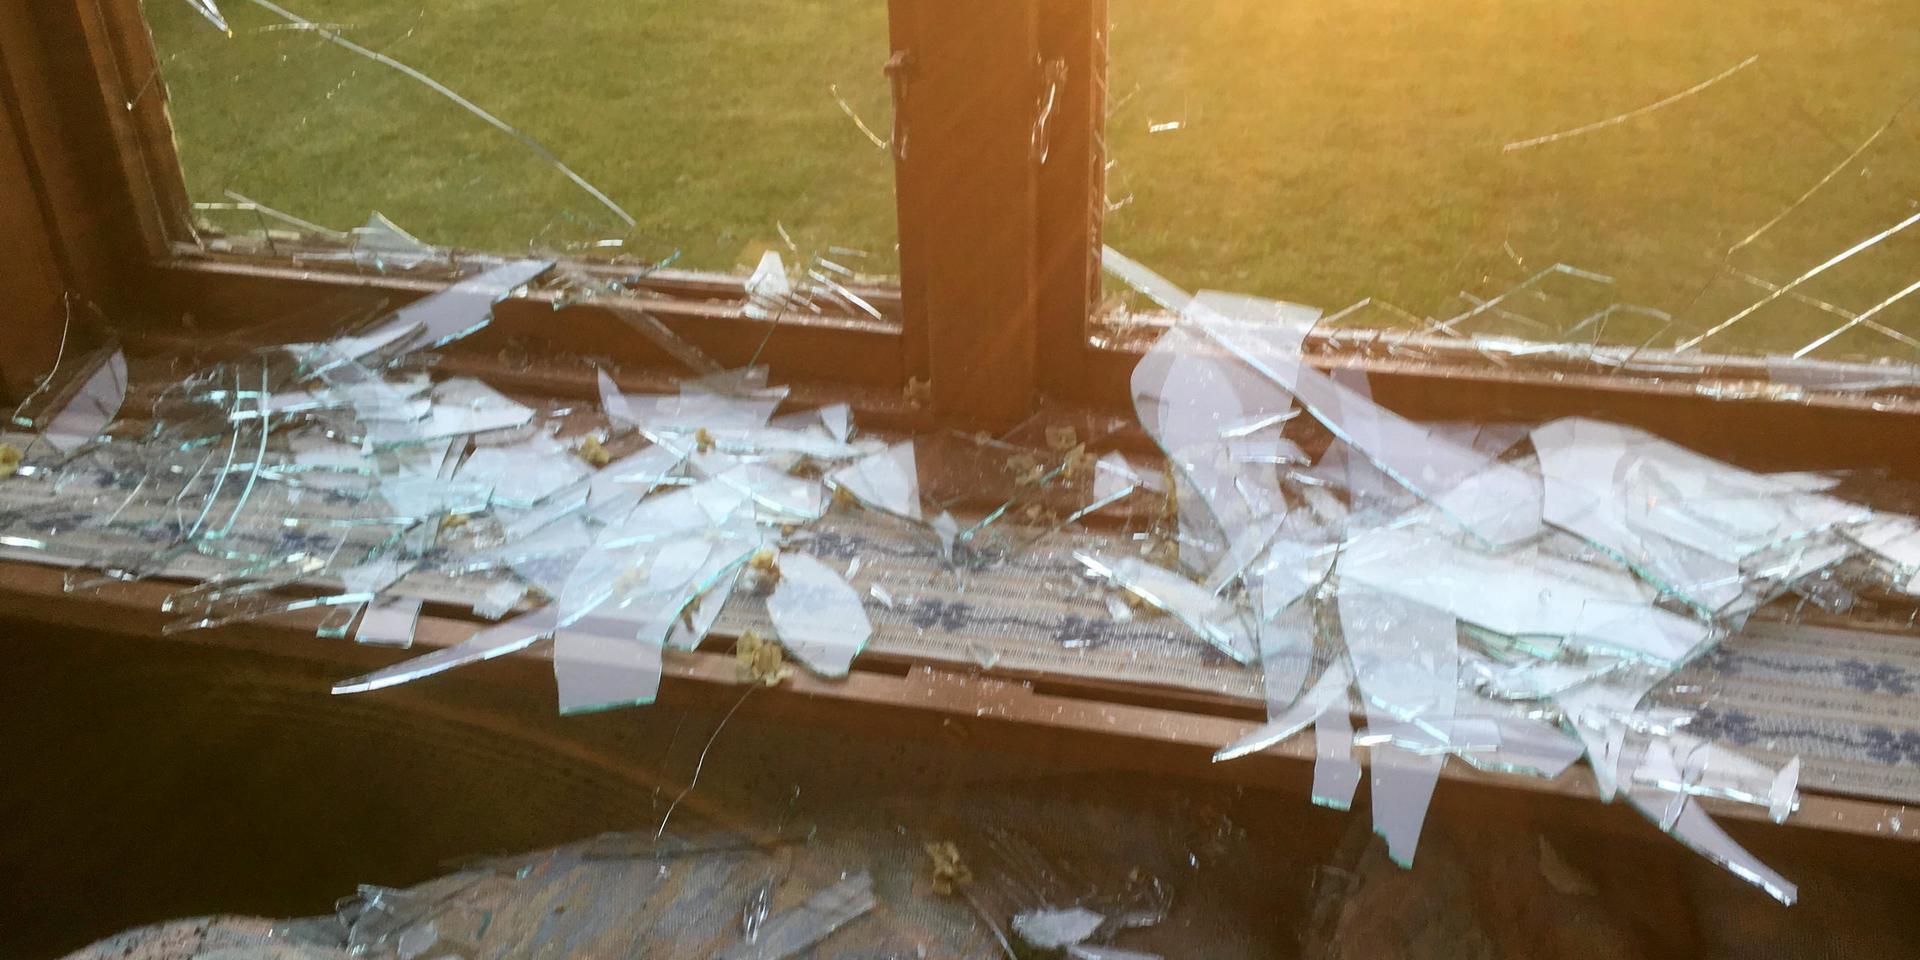 Tretton stycken fönster på huset fick sina glasrutor krossade.